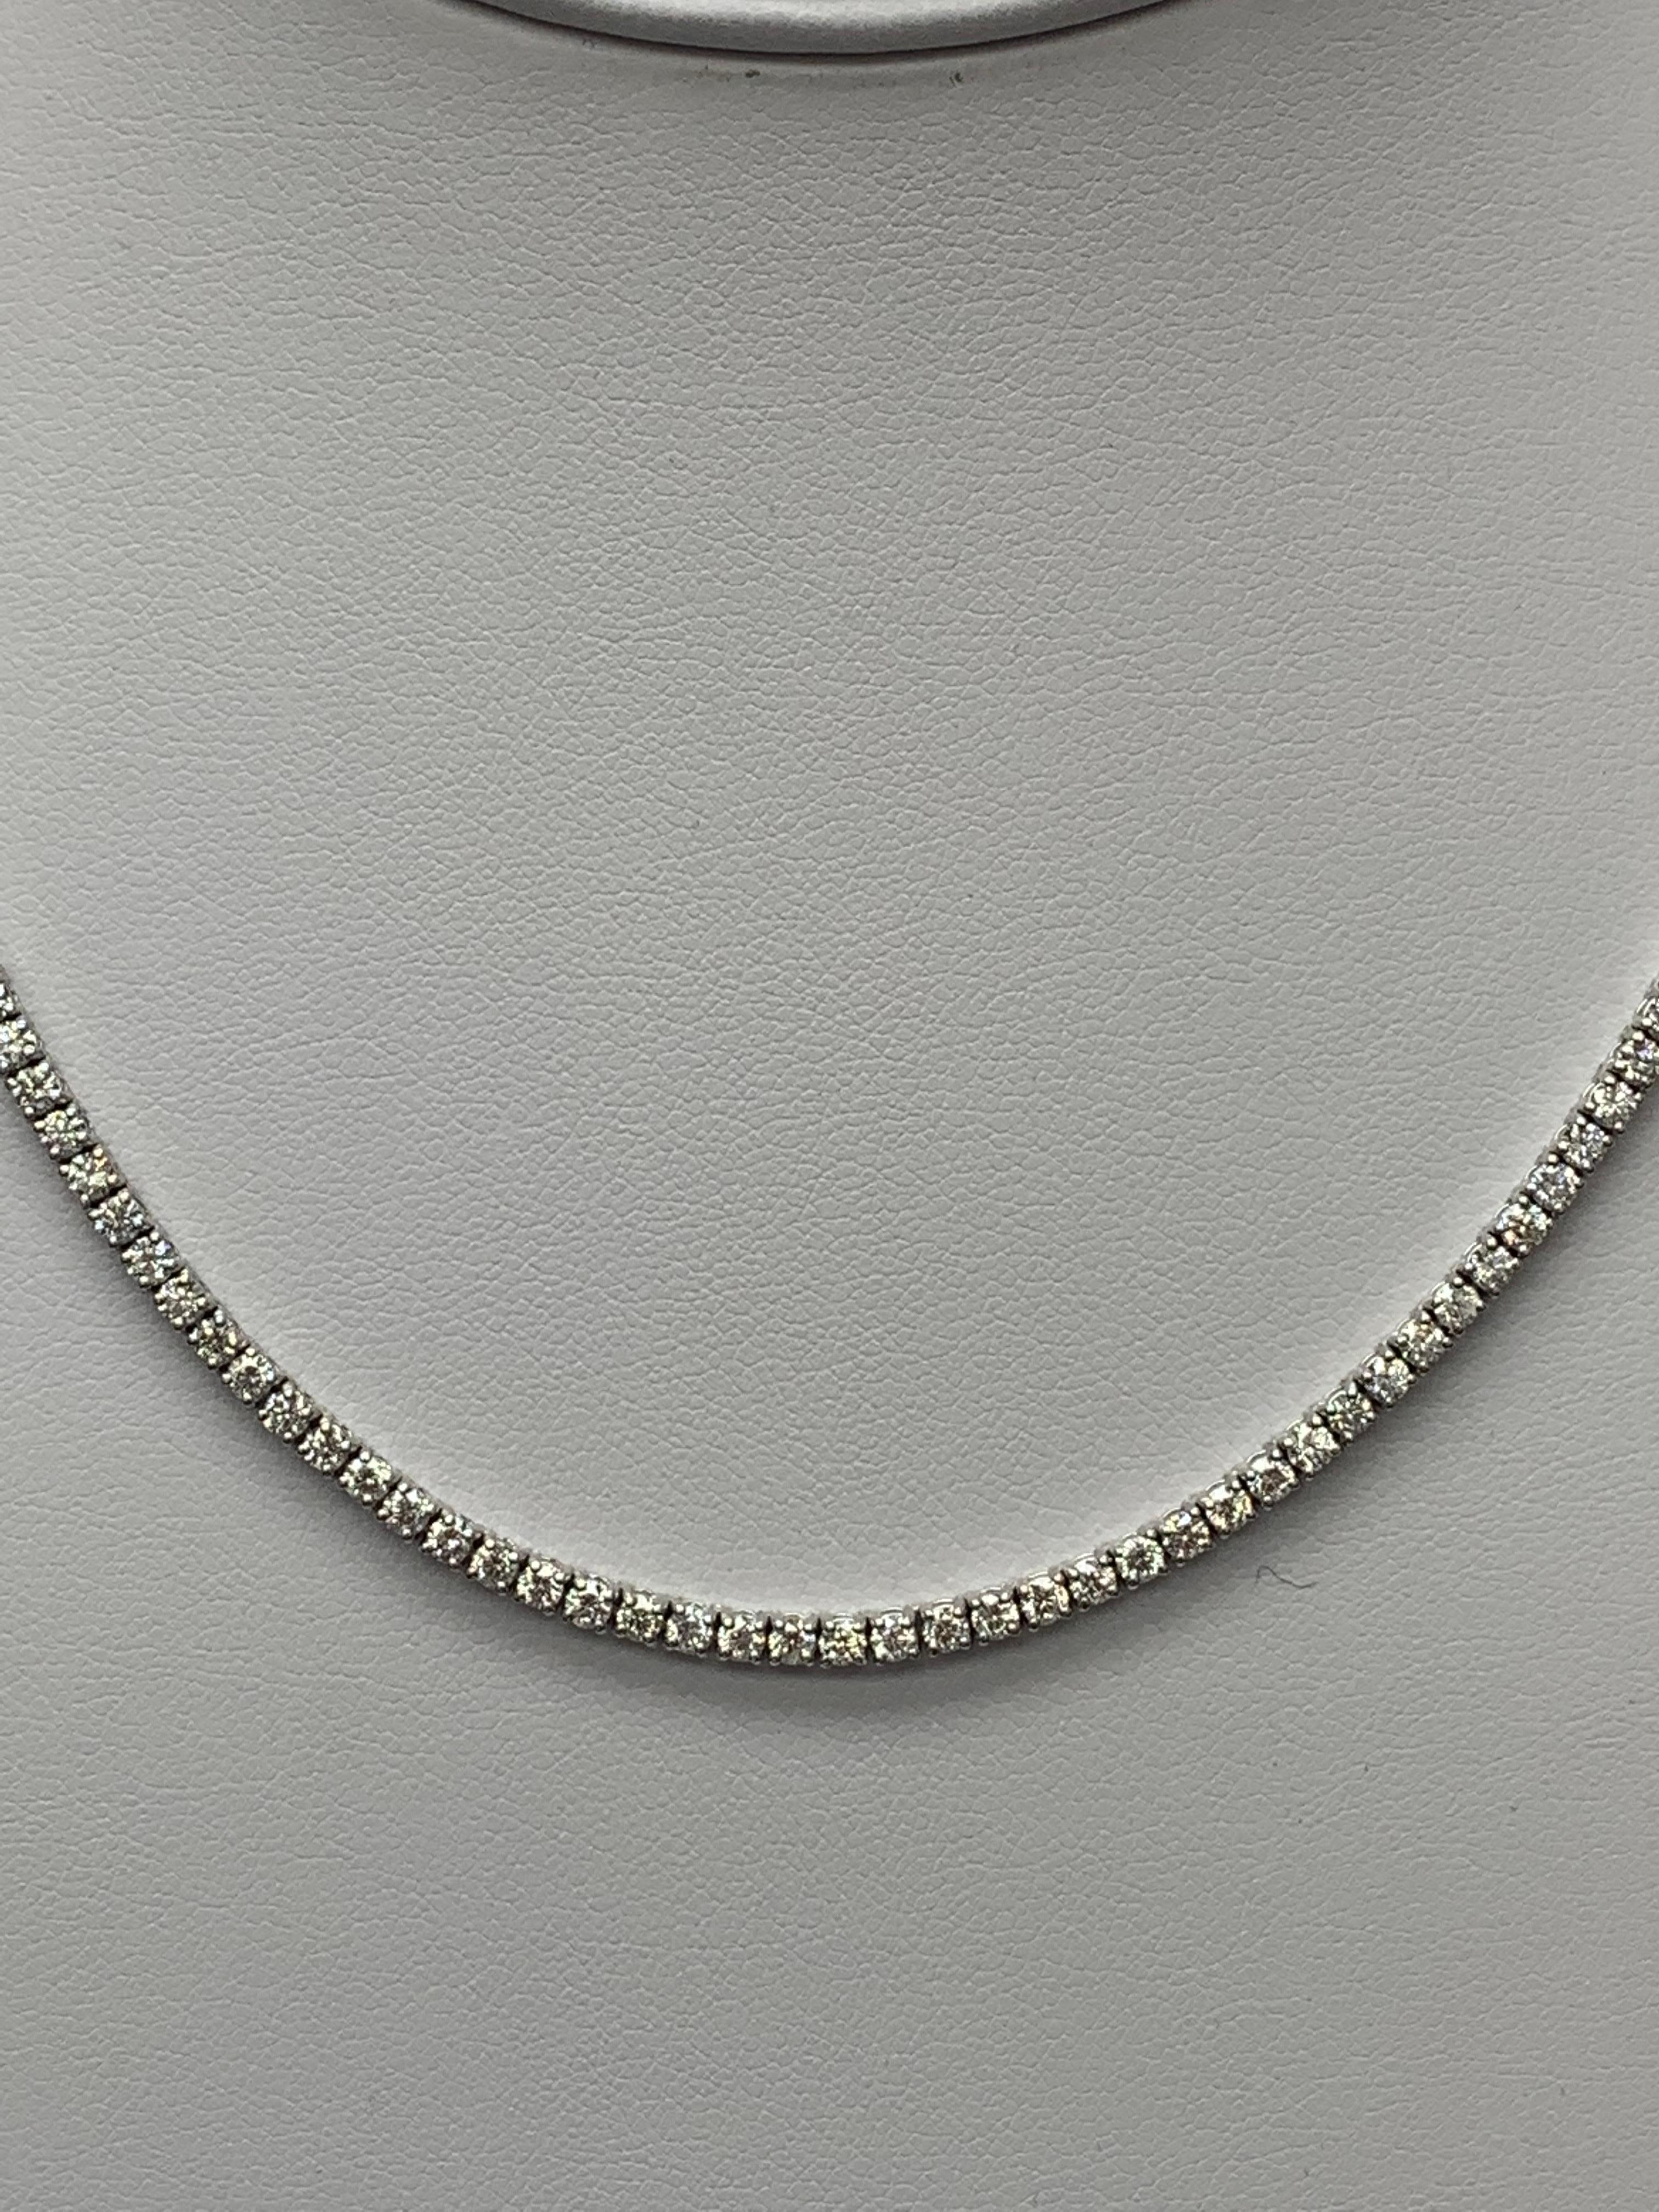 Ein brillantes und klassisches Stück mit einer Reihe runder Diamanten, gefasst in 14K Weißgold. 156 Diamanten in dieser Halskette sind im runden Brillantschliff und wiegen insgesamt 11,31 Karat. 16 Zoll in der Länge.